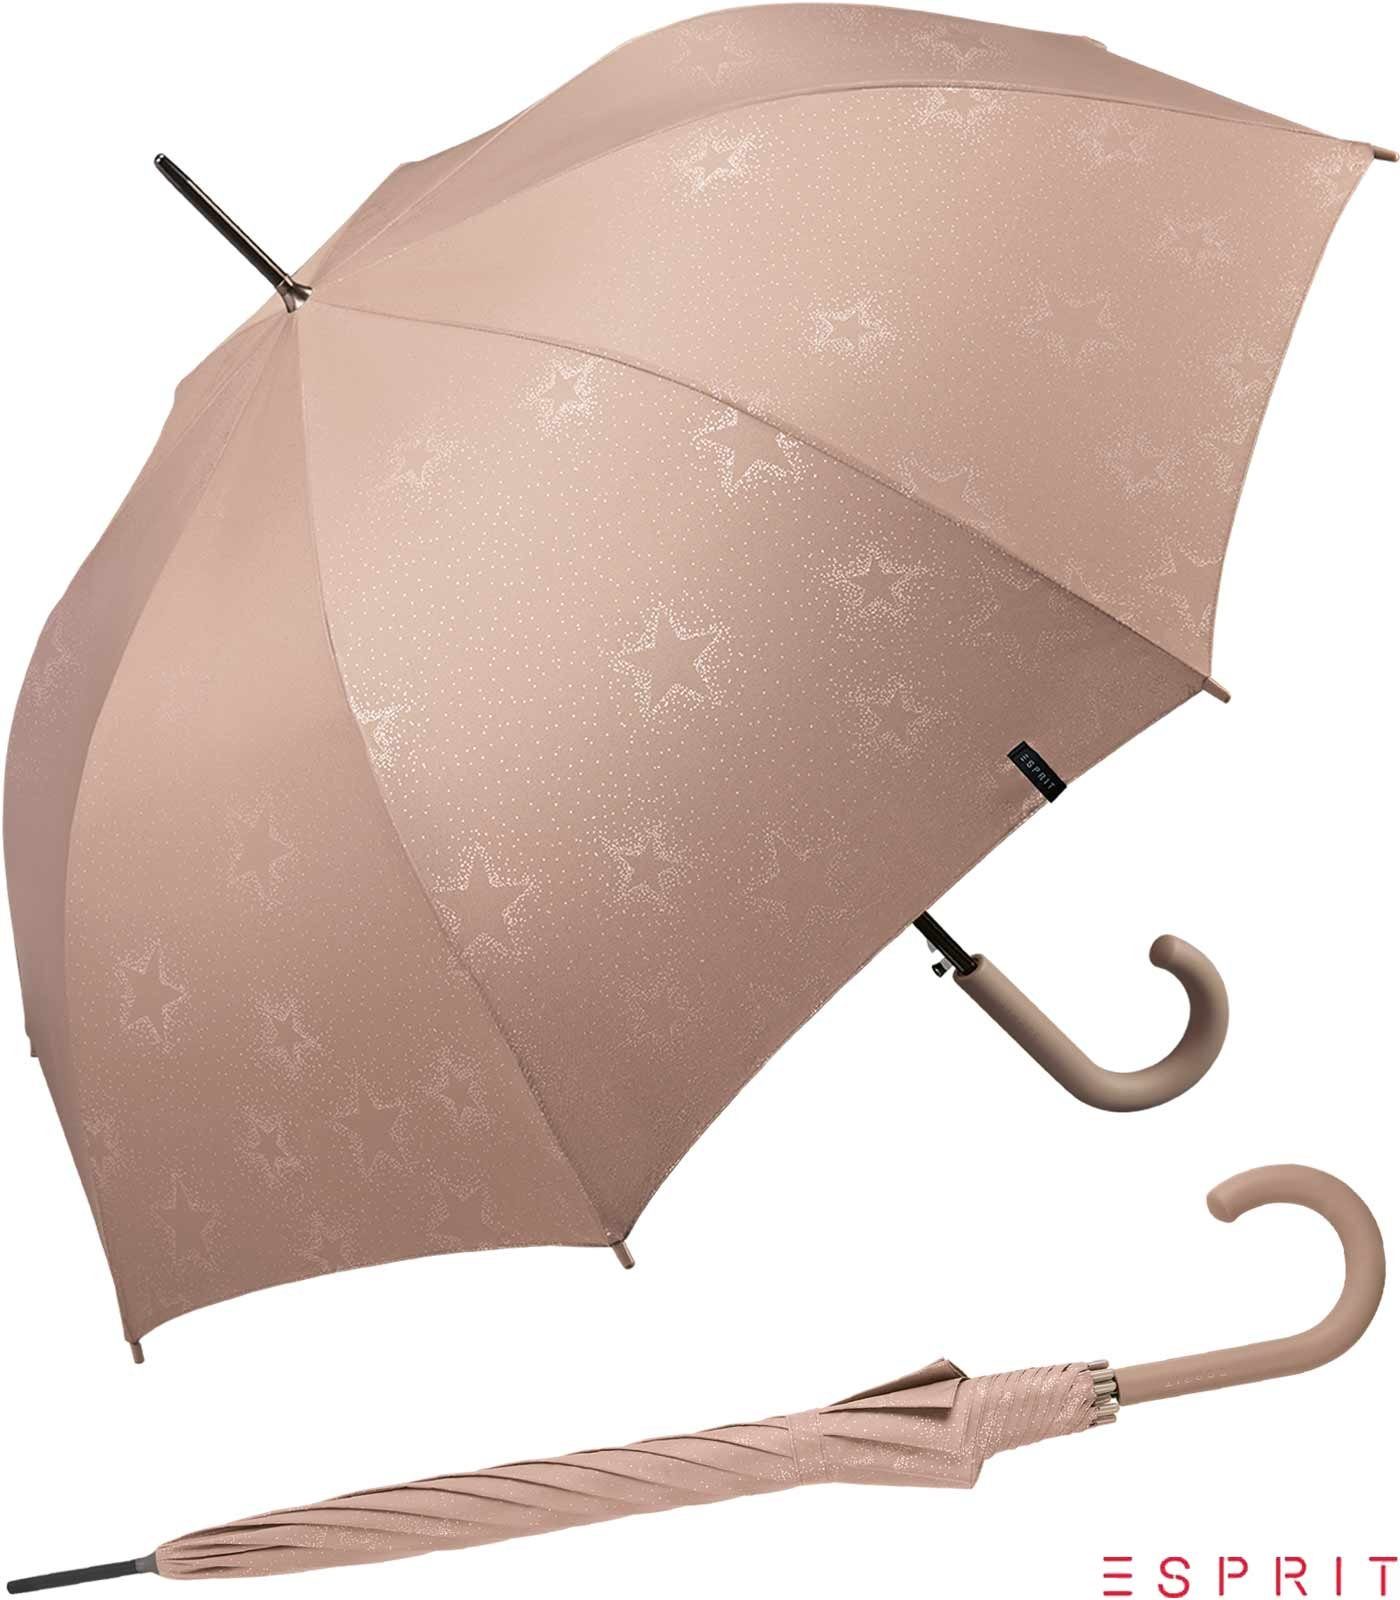 Esprit Langregenschirm Damen Auf-Automatik - Starburst - taupe gray metallic, groß, stabil, mit verspieltem Sternenmuster